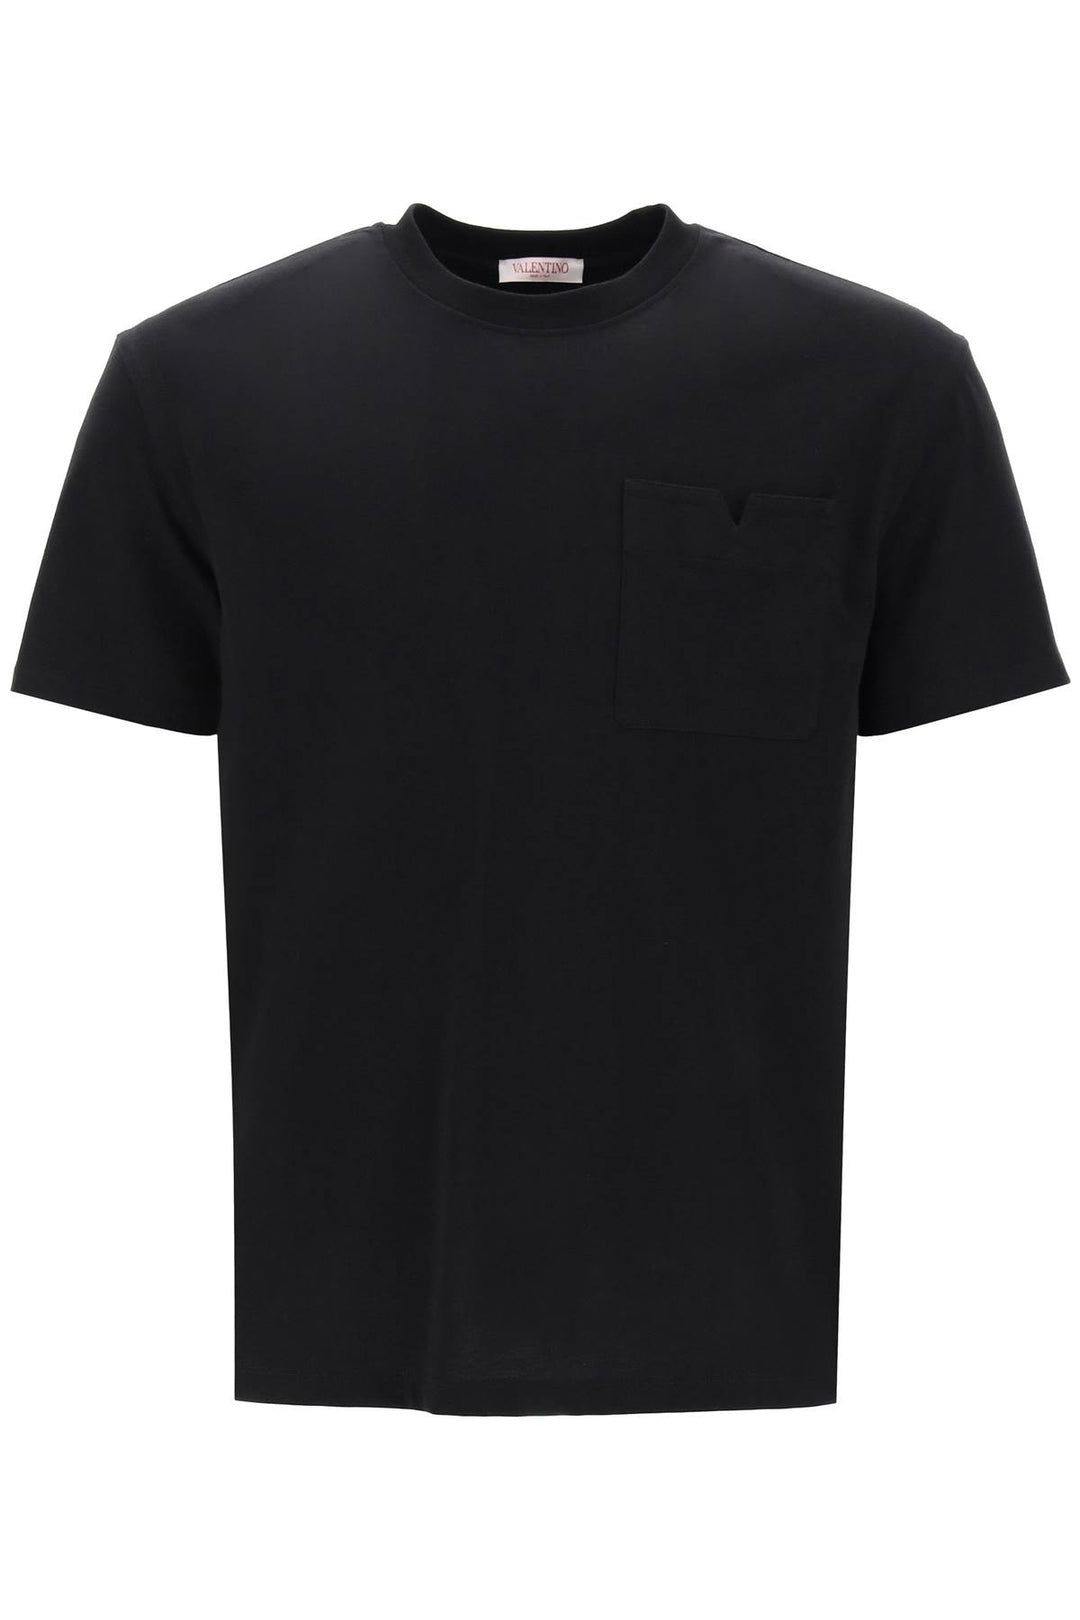 Valentino Garavani Regular Fit Pocket T Shirt   Black